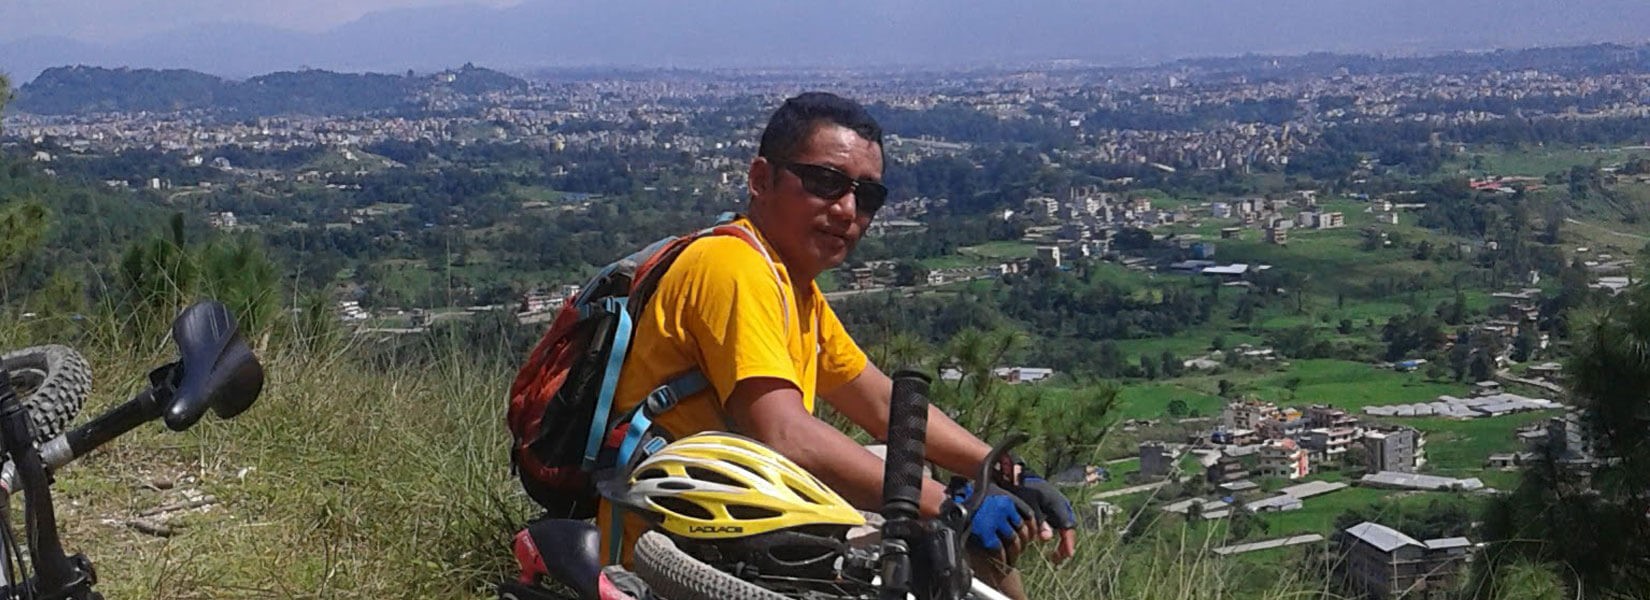 Kathmandu Valley Mountain Biking Tour